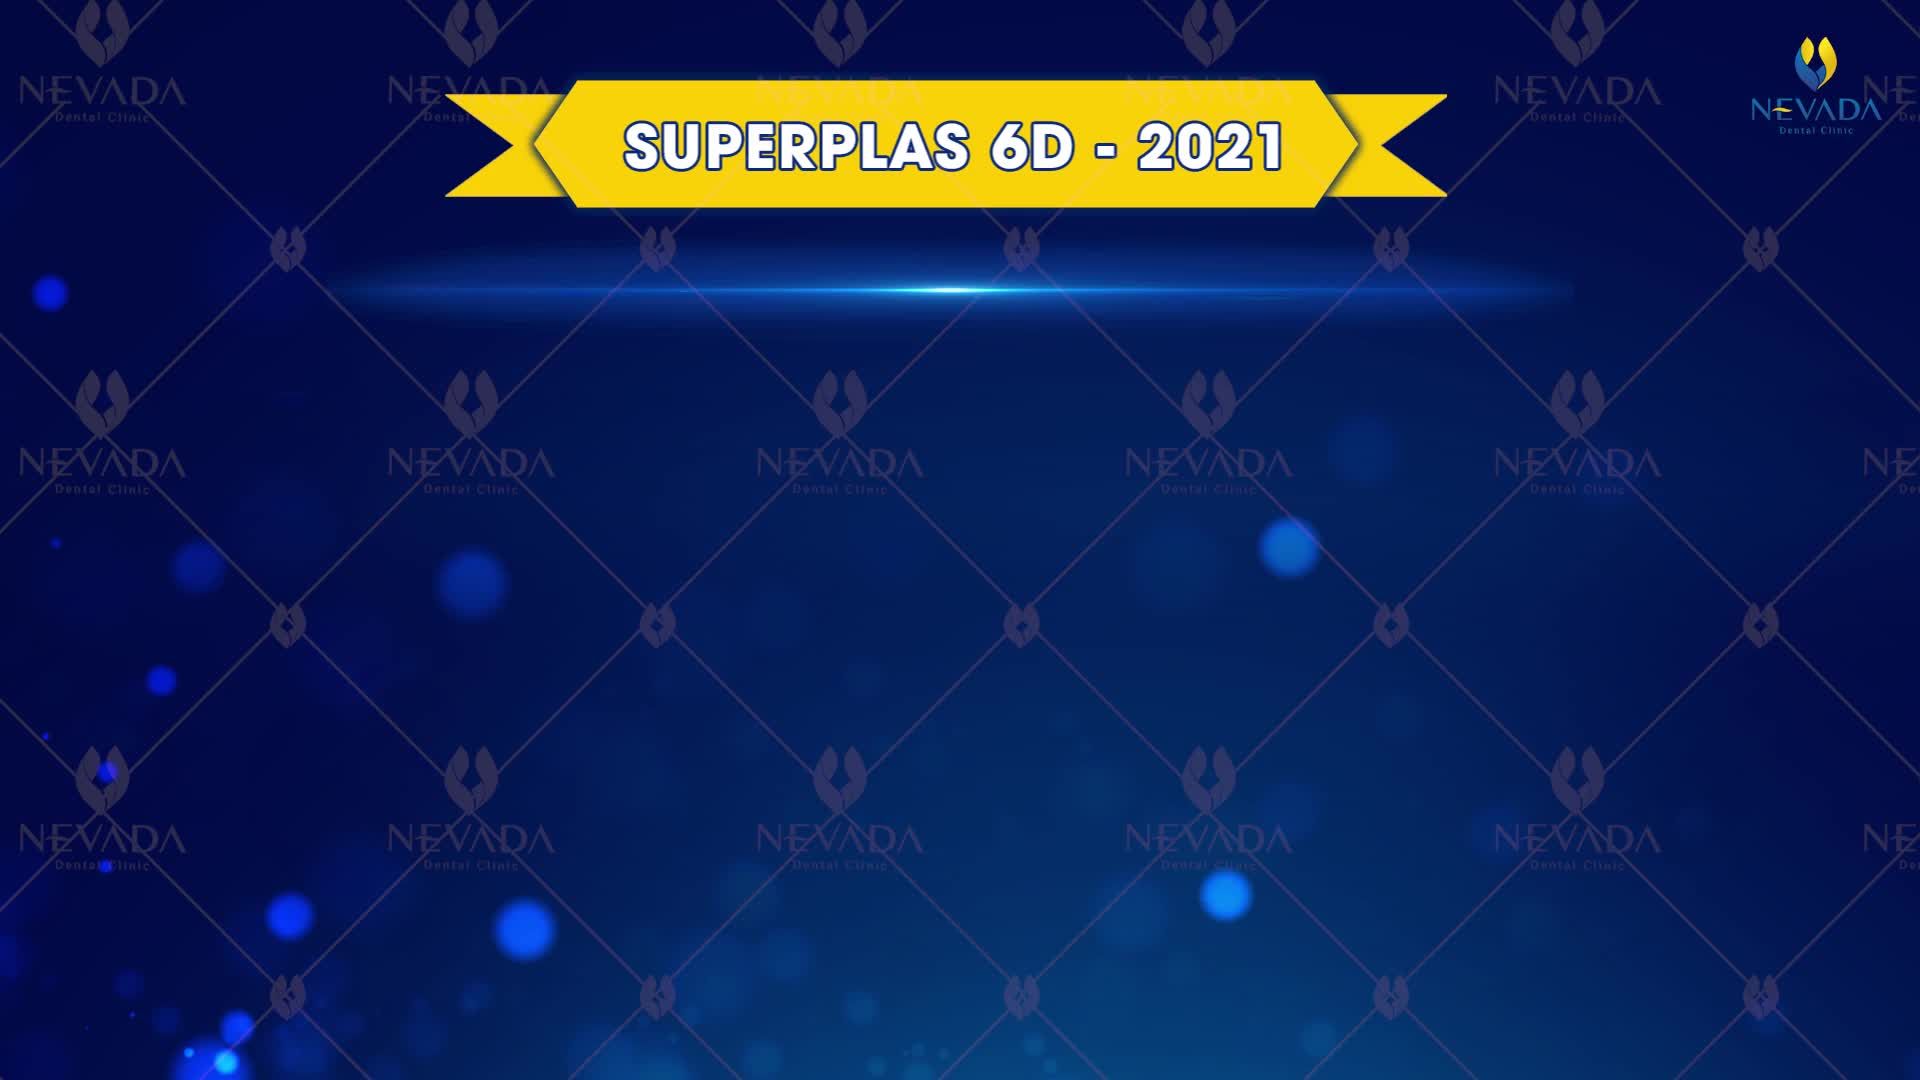 SUPERPLAS 6D - ĐỘT PHÁ MỚI TRONG CÔNG NGHỆ RĂNG SỨ THẨM MỸ 2021